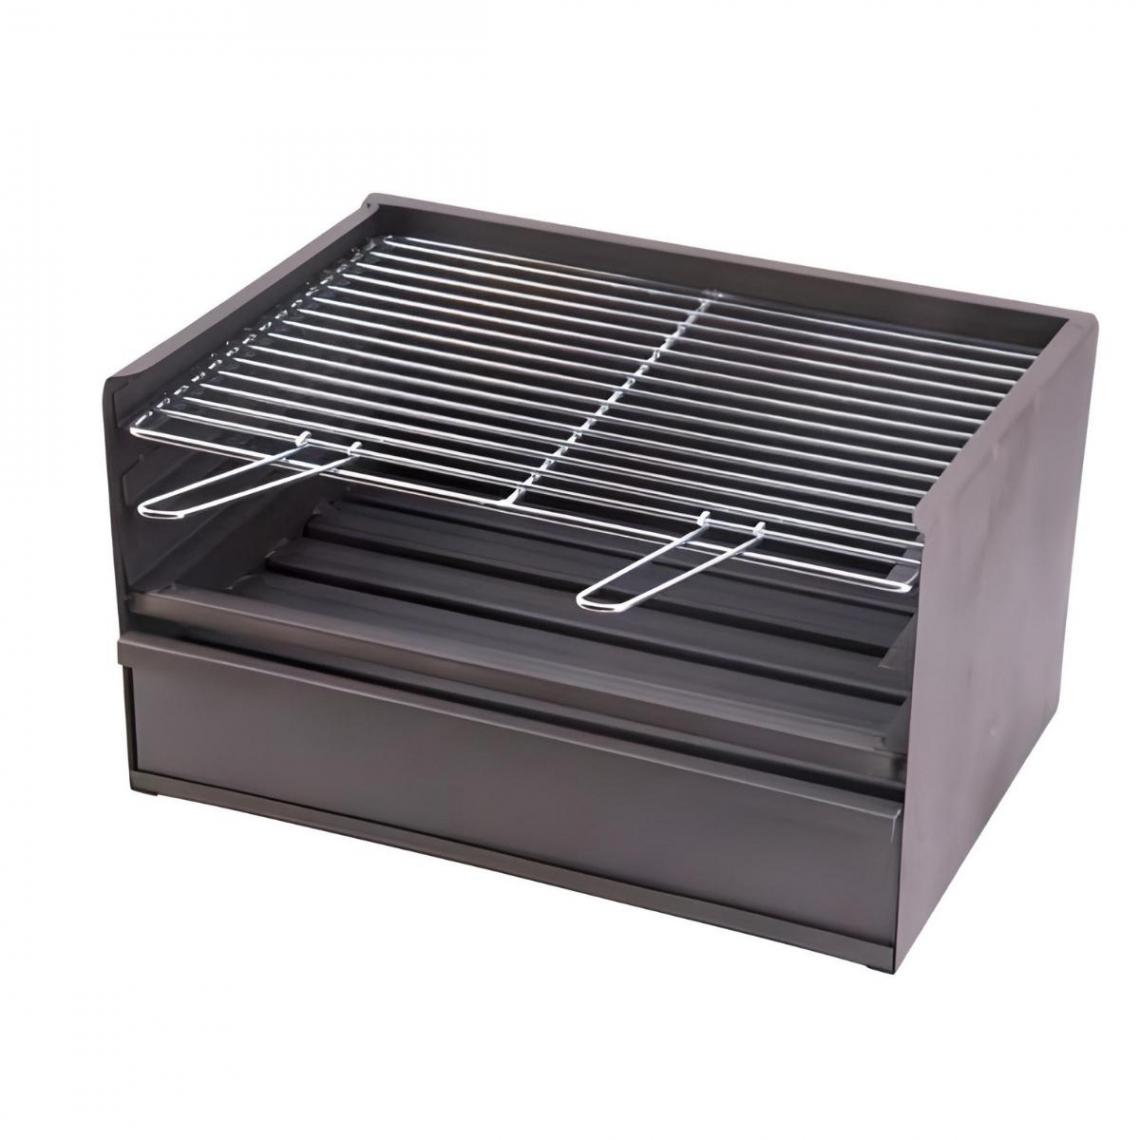 Visiodirect - Tiroir Barbecue 3 hauteur avec grille galvanisée en Acier Inoxydable coloris Gris - 50 x 41 x 36 cm - Accessoires barbecue